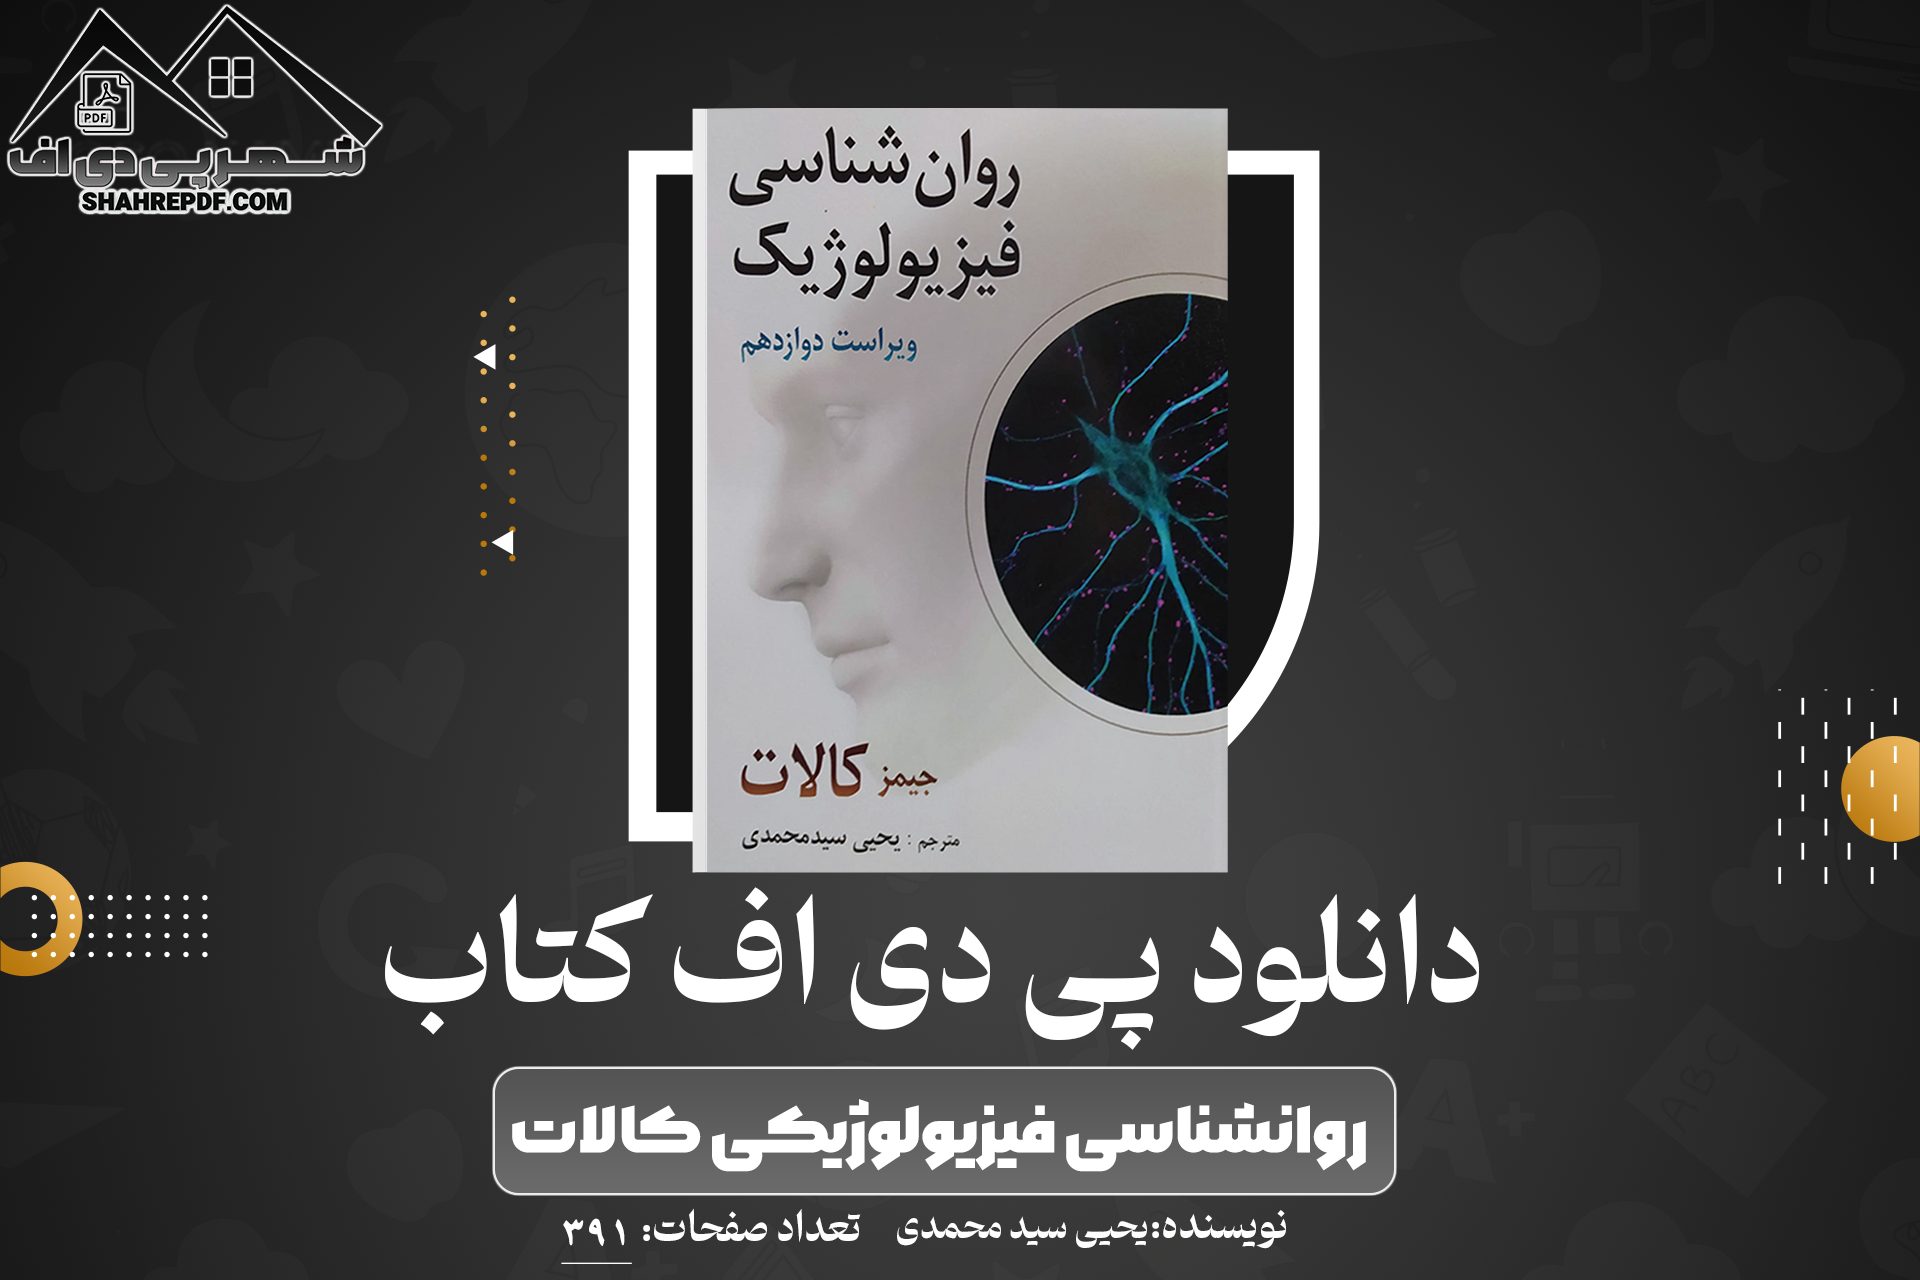 دانلود PDF کتاب روانشناسی فیزیولوژیکی کالات یحیی سید محمدی 